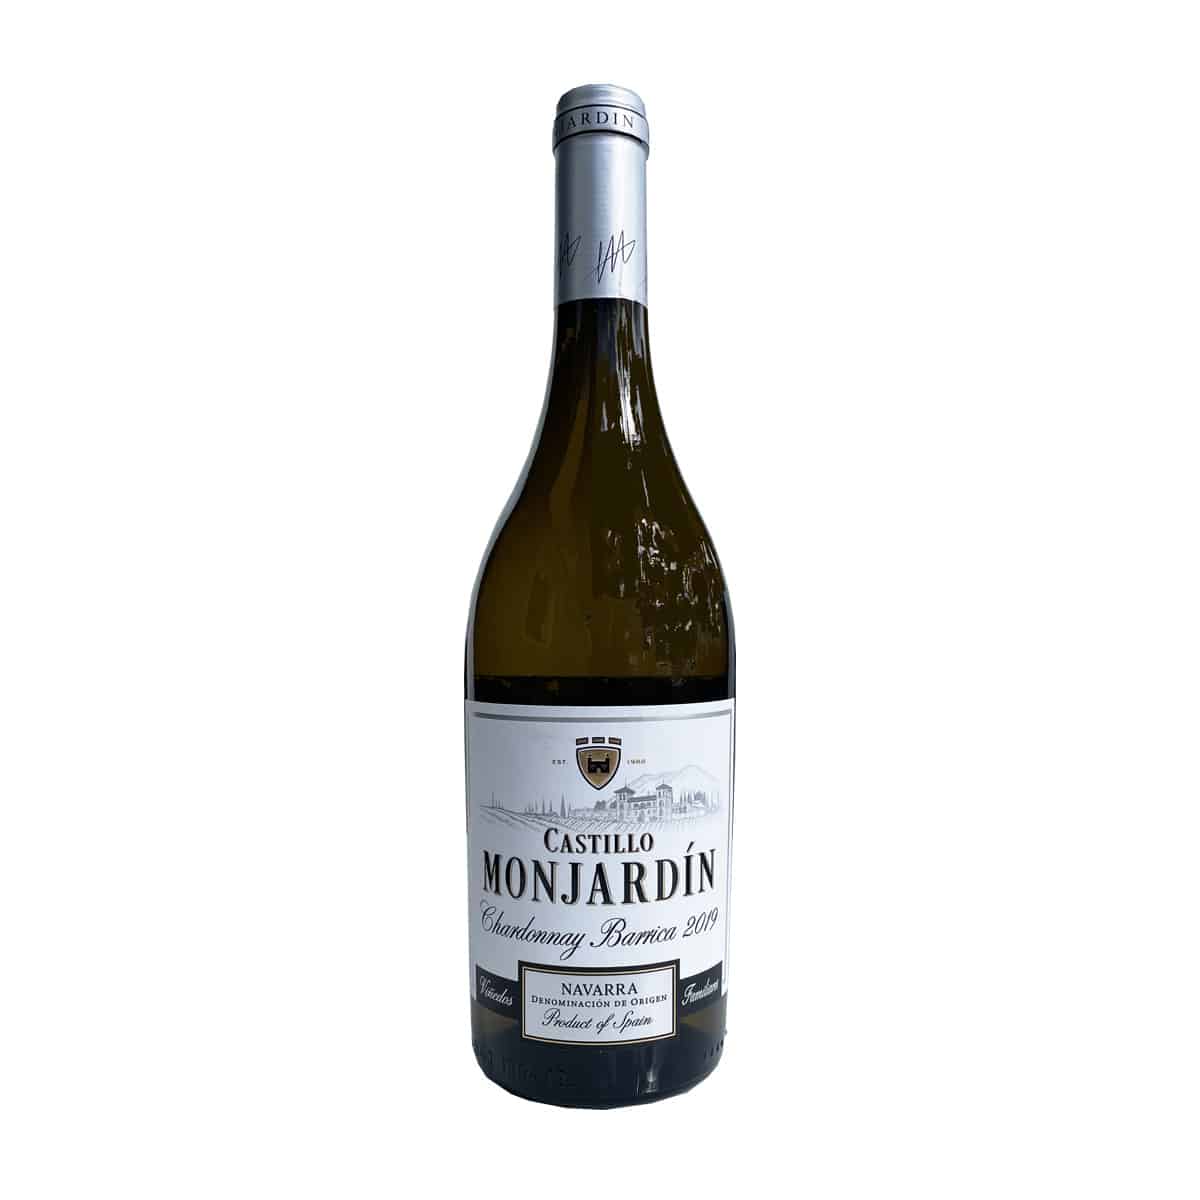 Castillo Monjardin Chardonnay Barrica Navarra 2019[85]